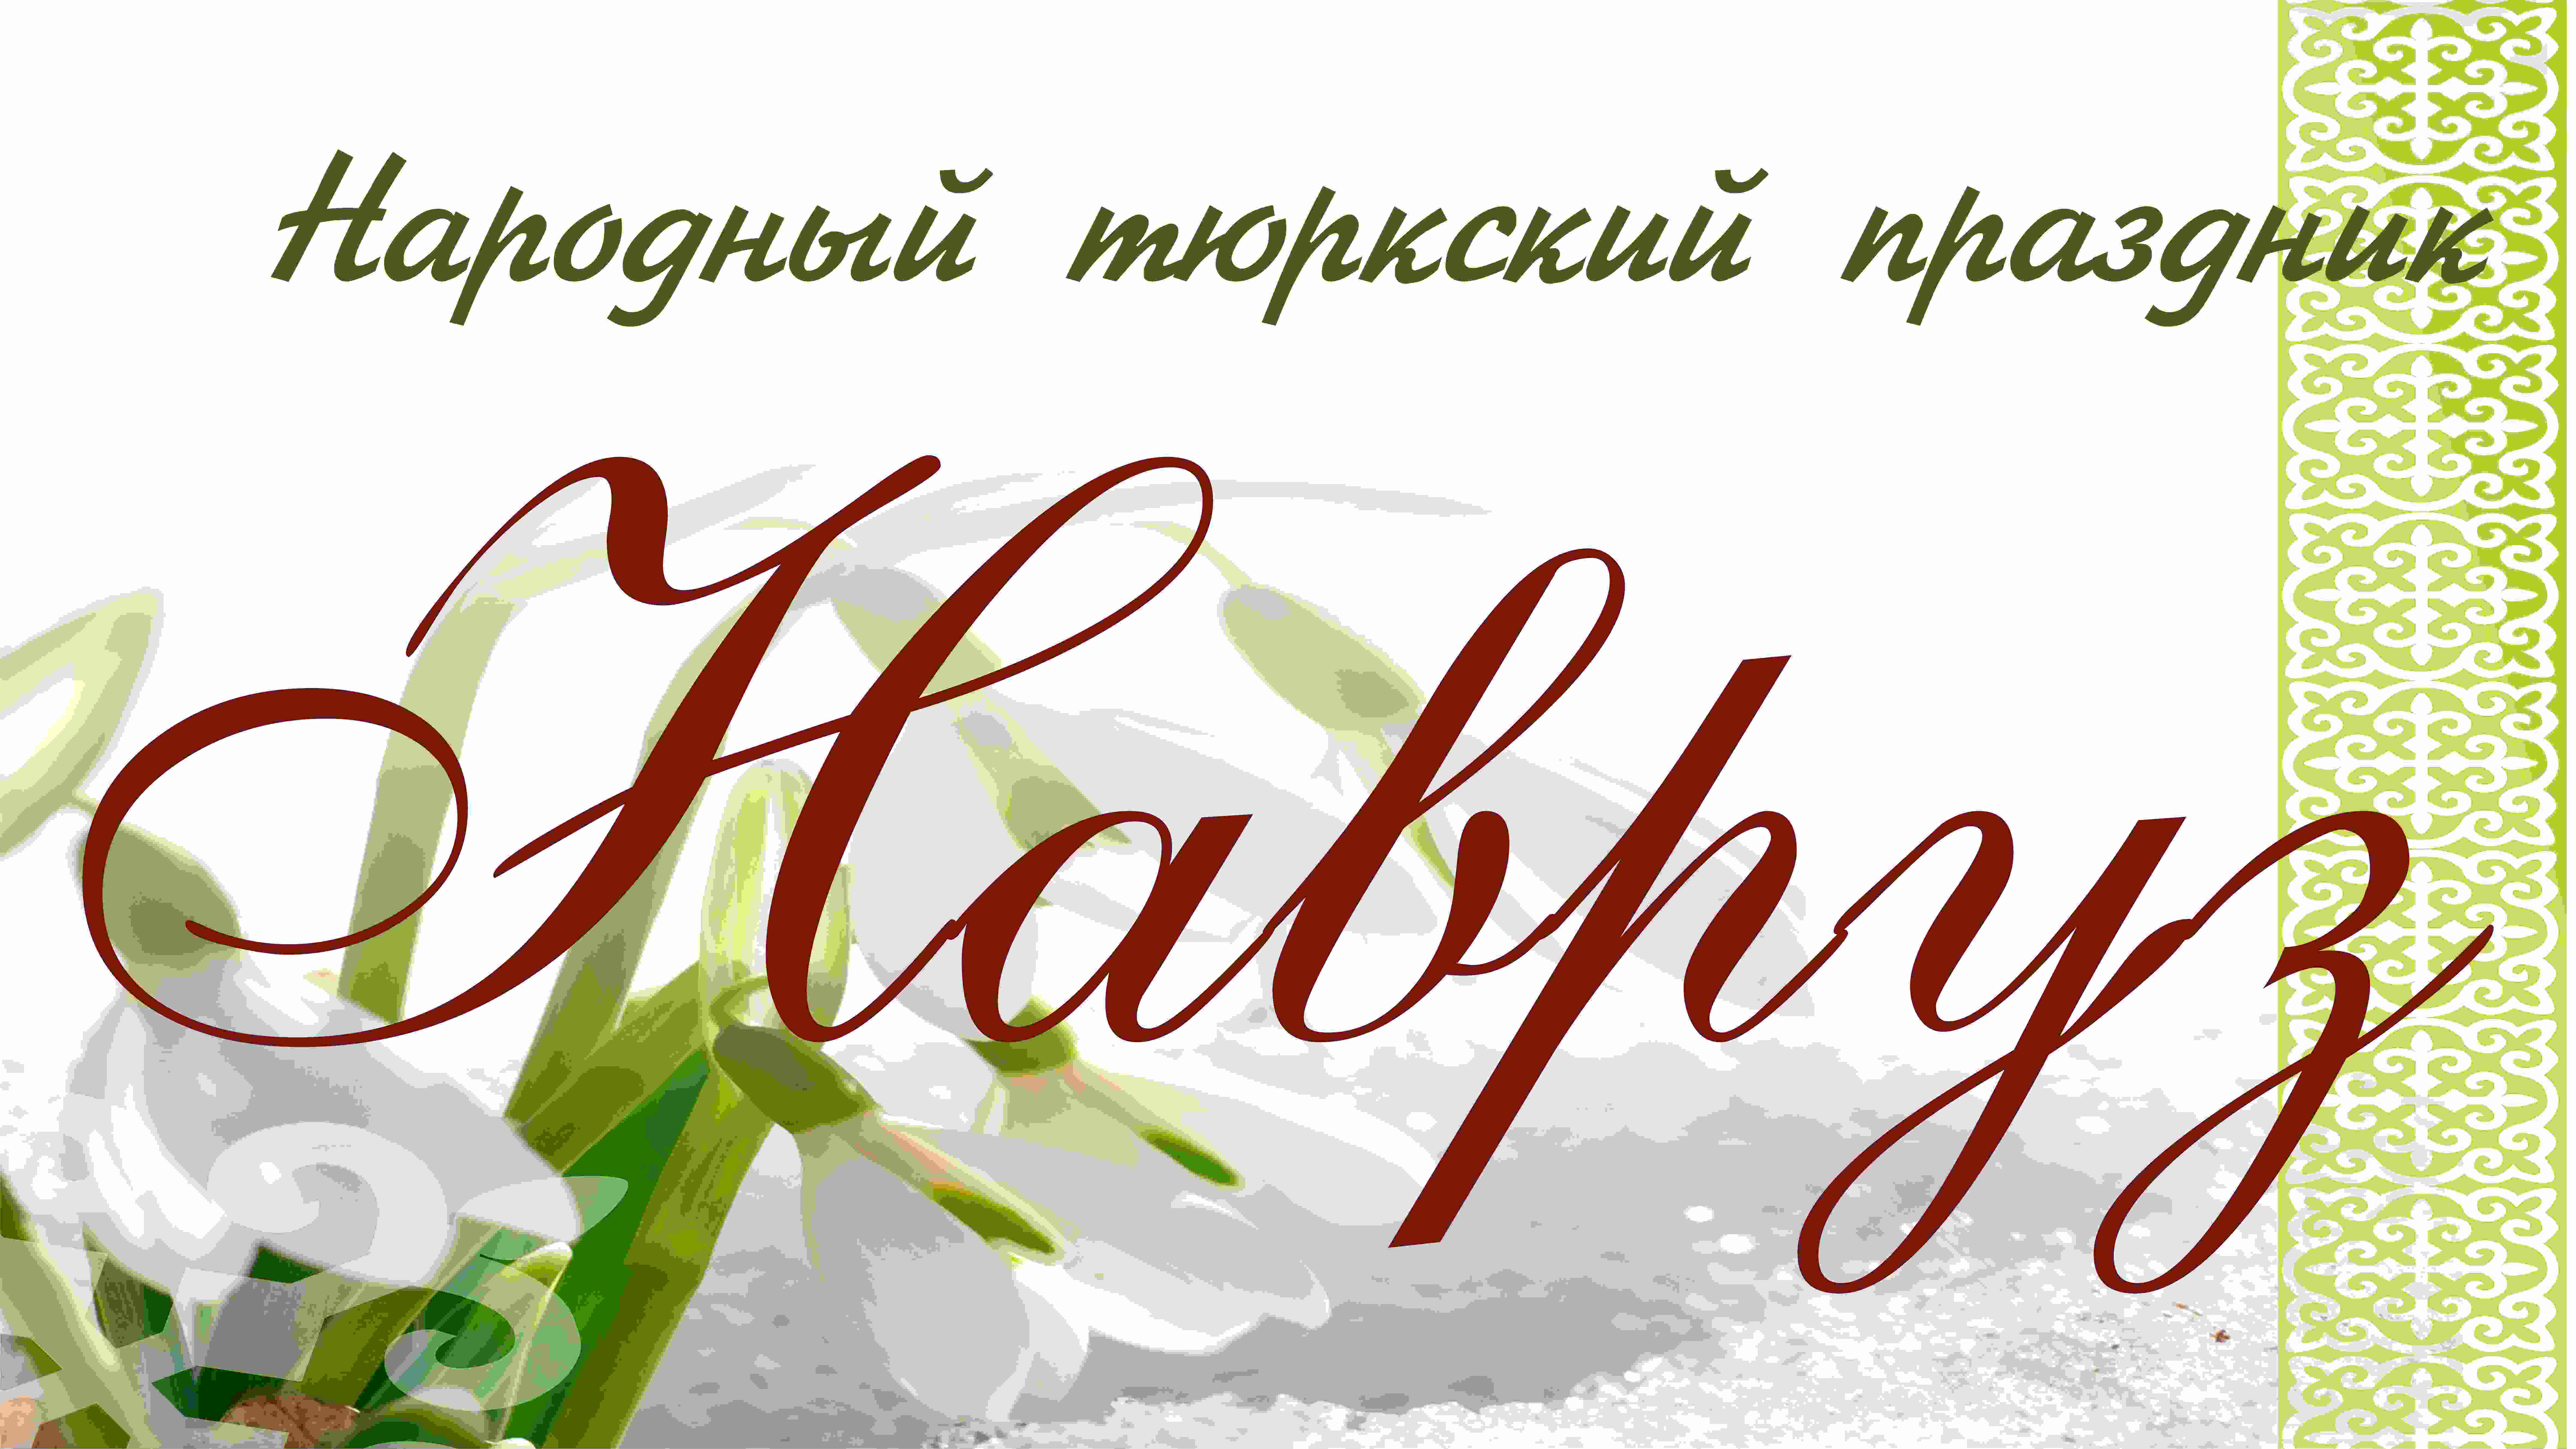 Народный праздник Наурыз
(20 марта 2011 г., с. Старинка Называевского района Омской области)